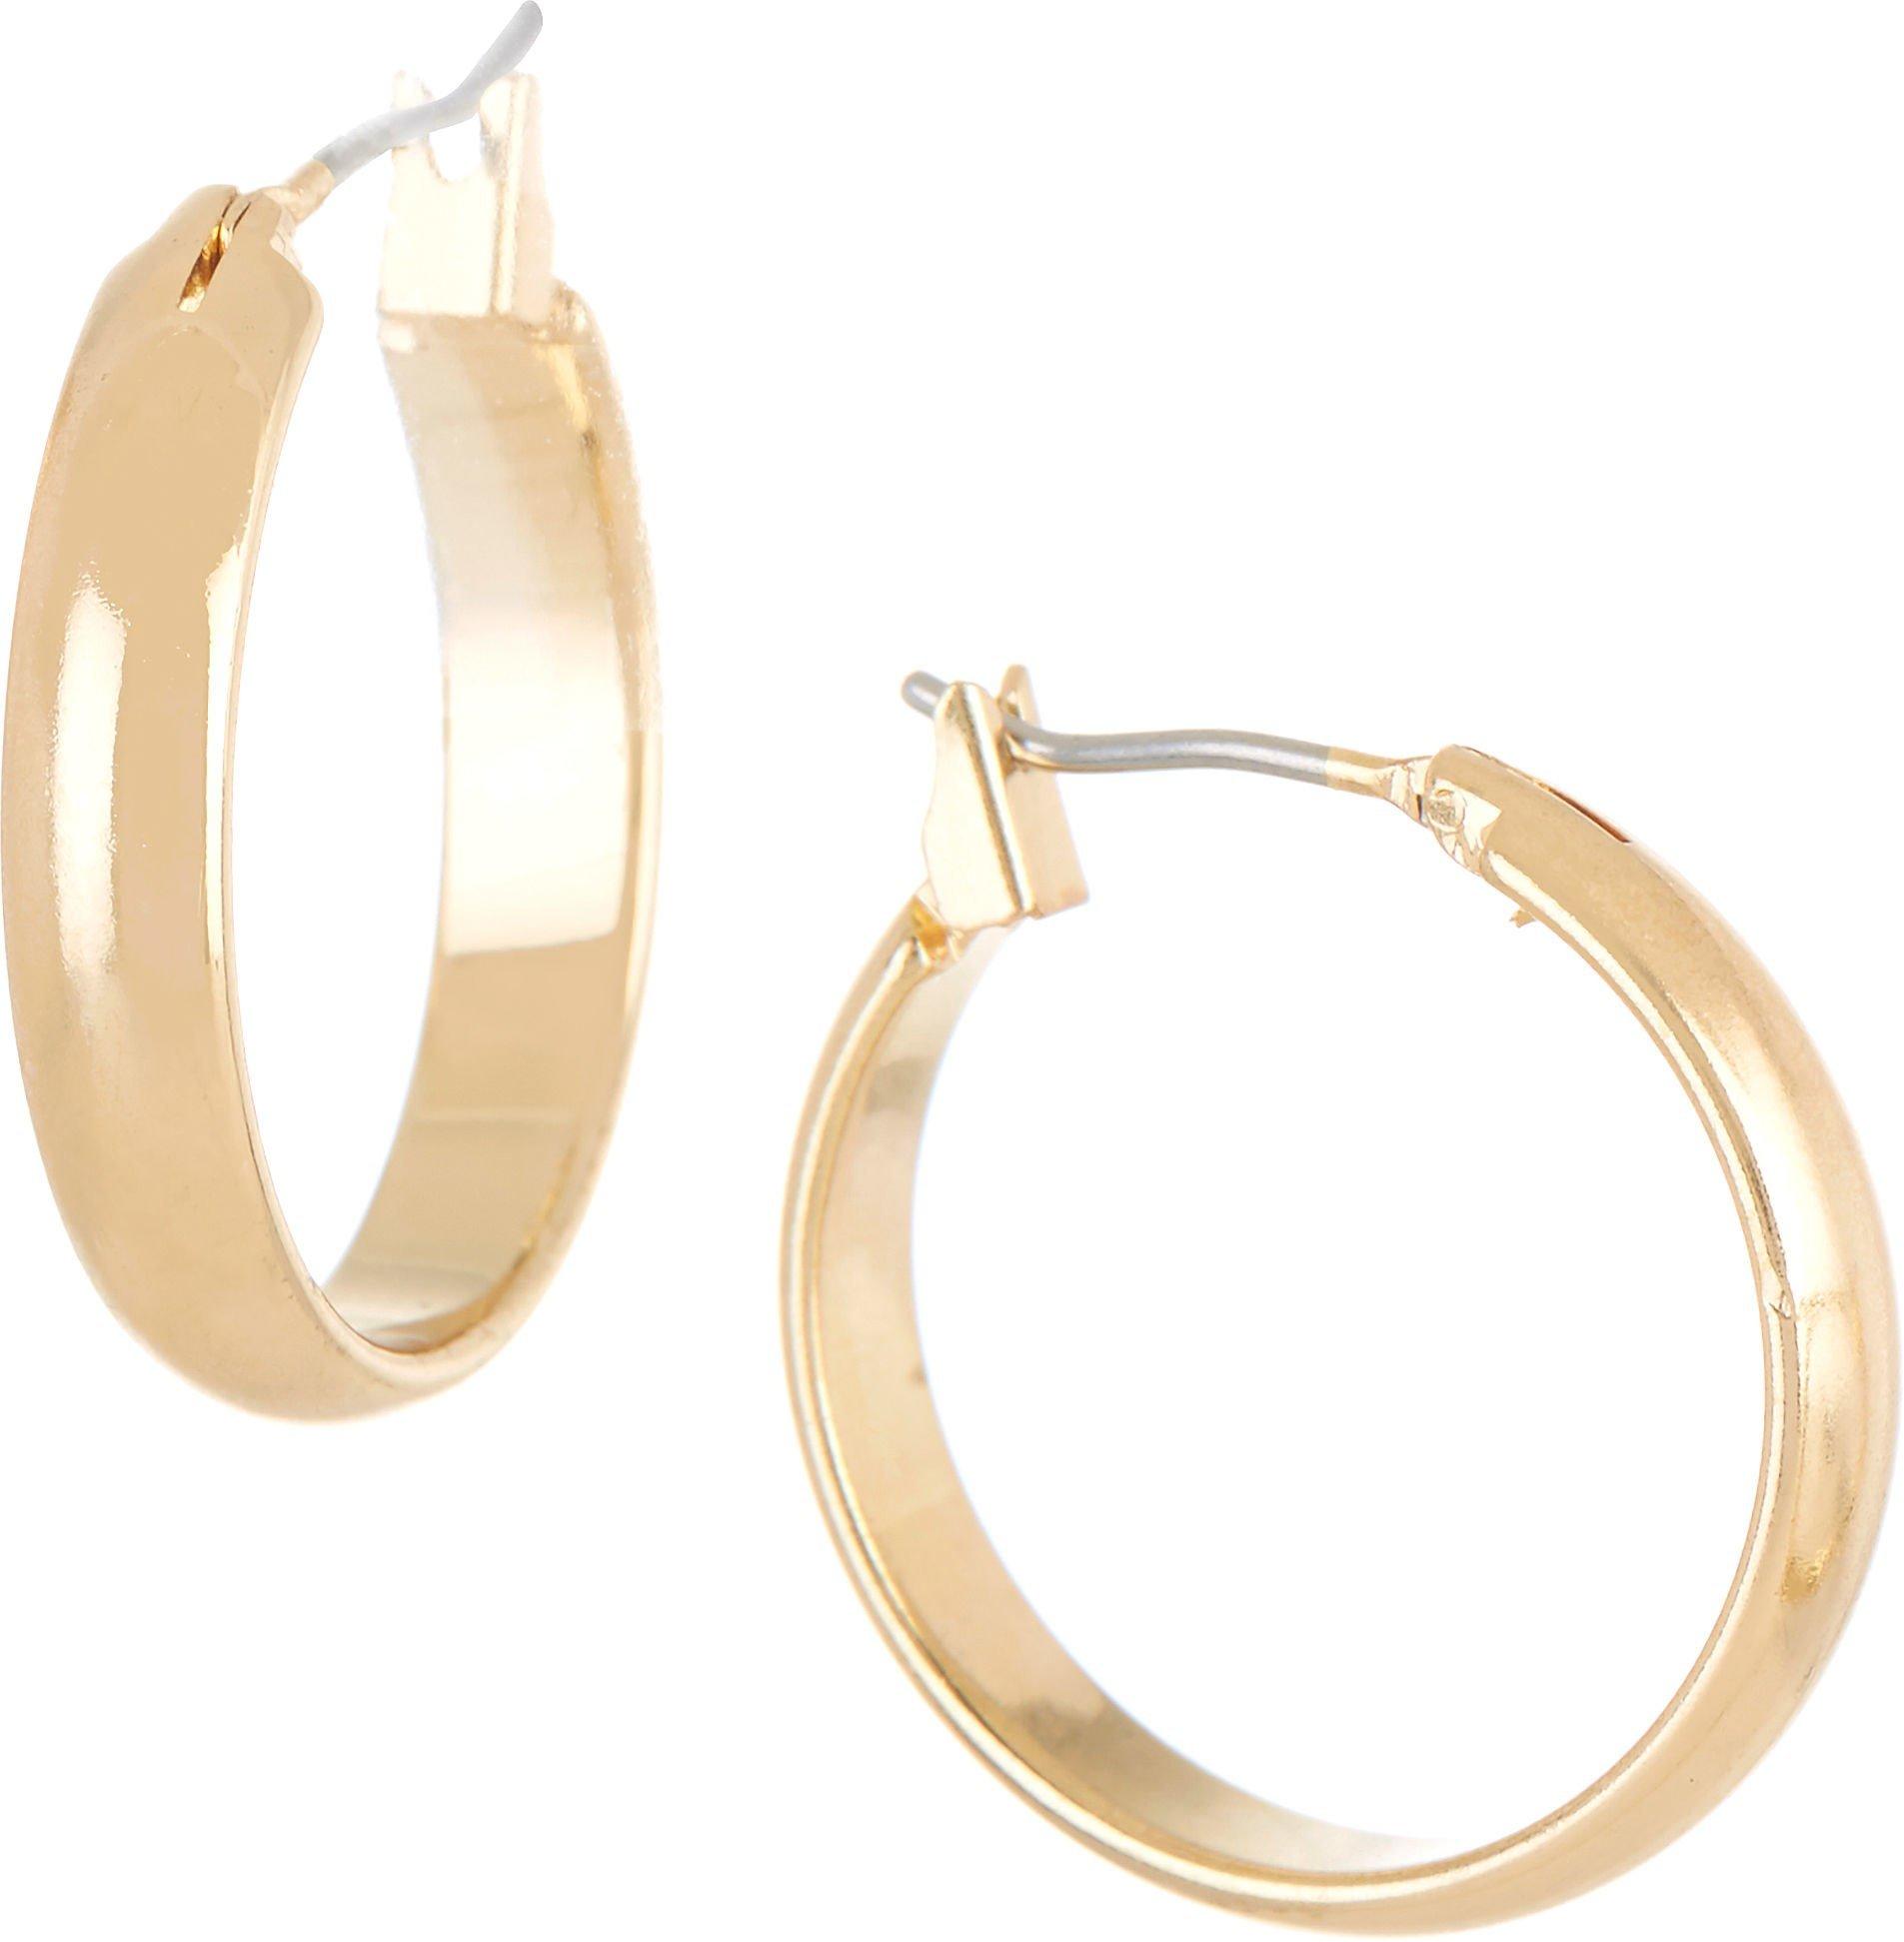 1 In. Curved Gold Tone Hoop Earrings